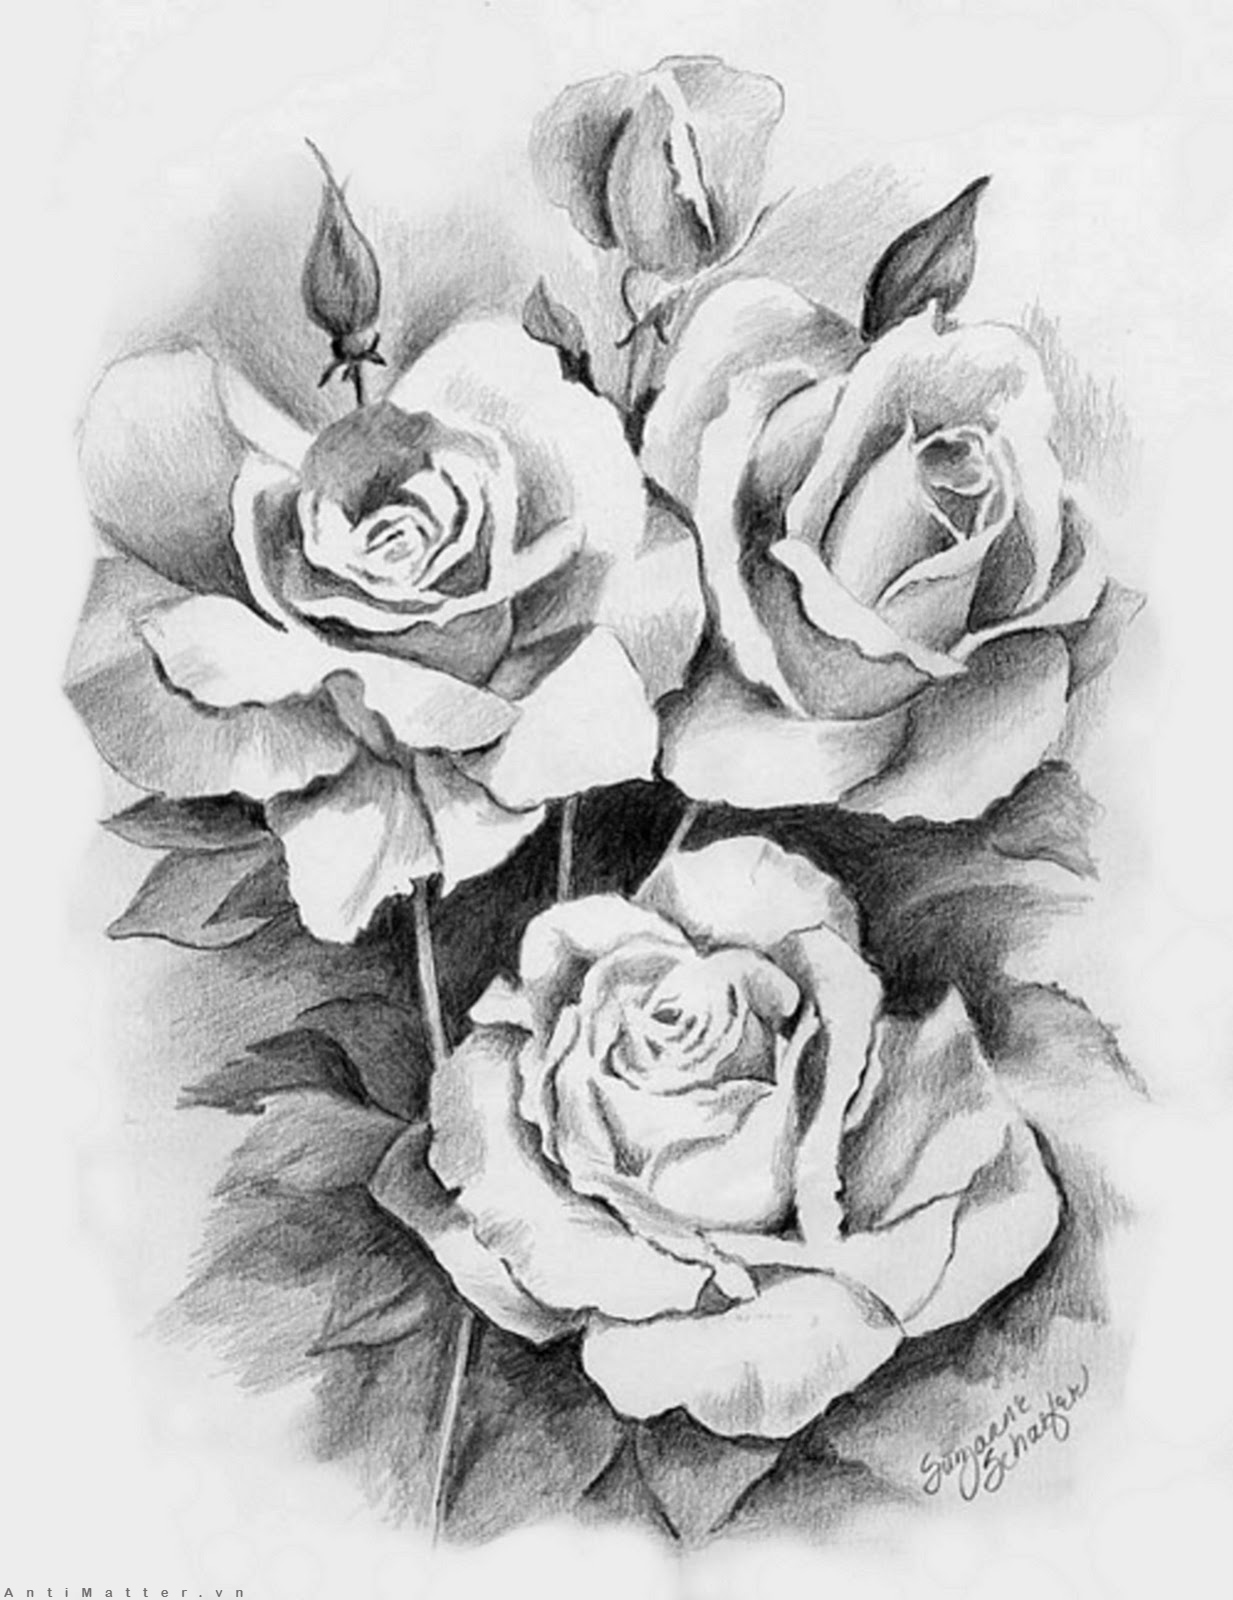  Dạy vẽ Hoa hồng bằng màu nước cho bé  Dạy bé vẽ  How to draw Flower by  watercolor for Kid  YouTube